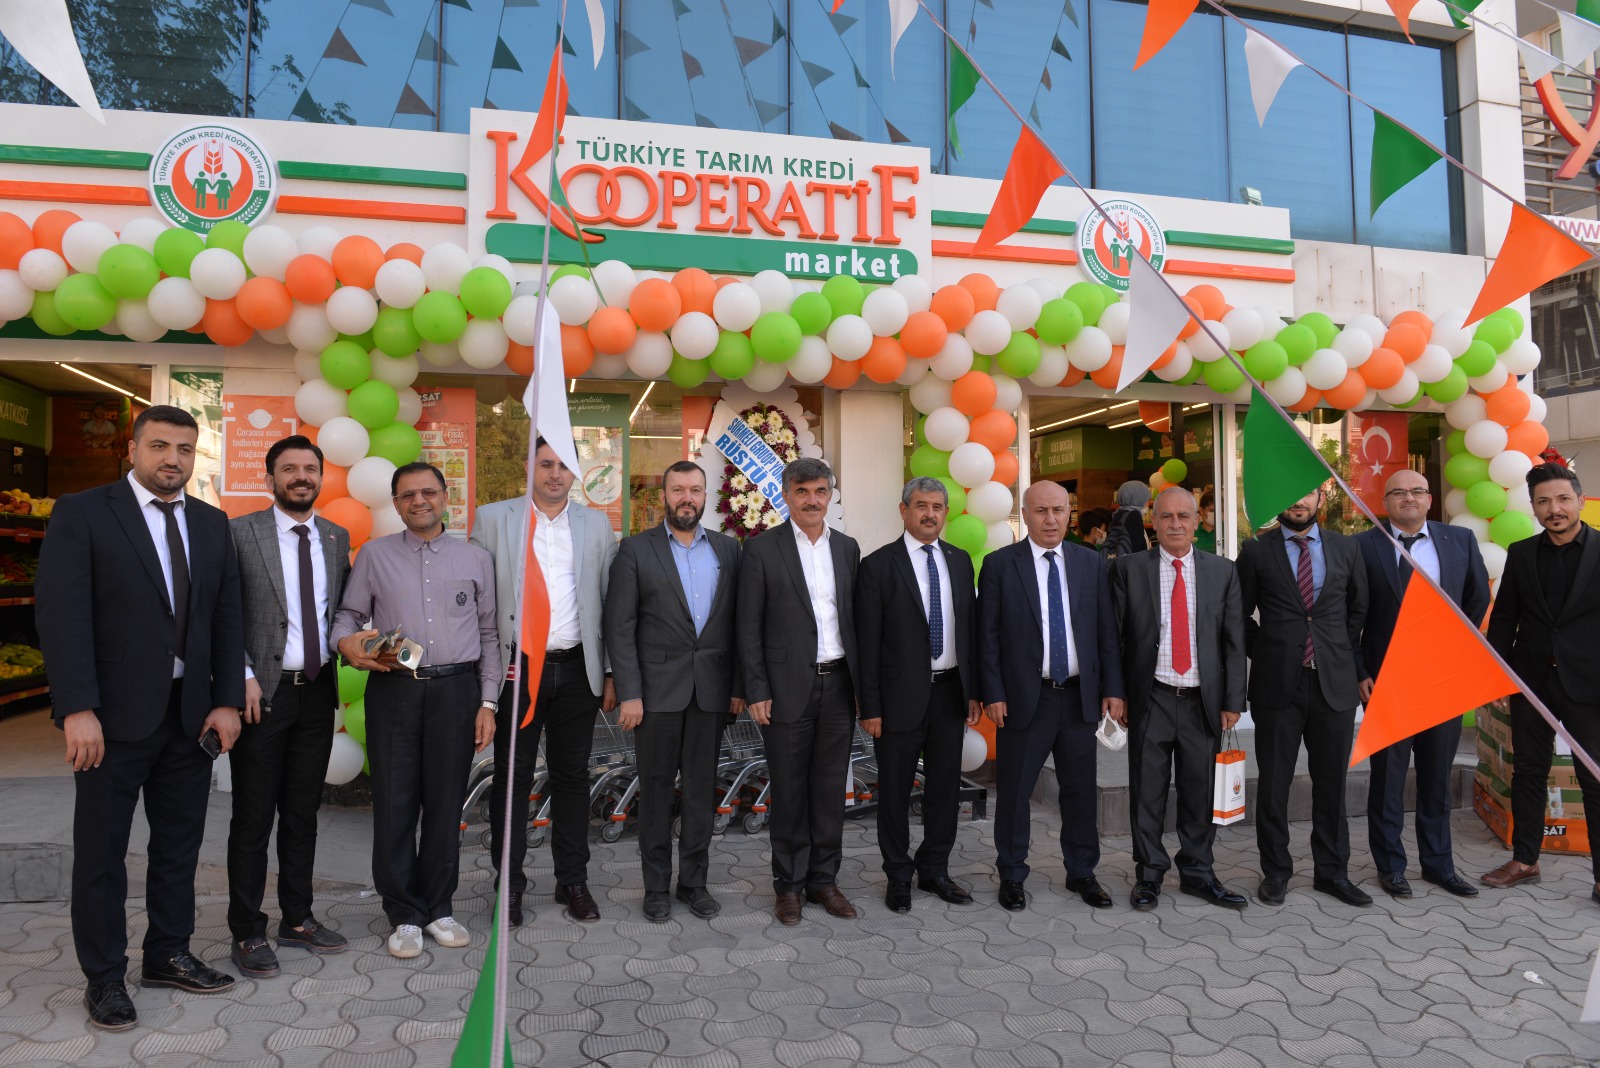 Türkiye Tarım Kredi Kooperatif Market’in 547’inci şubesi Hatay’da açıldı